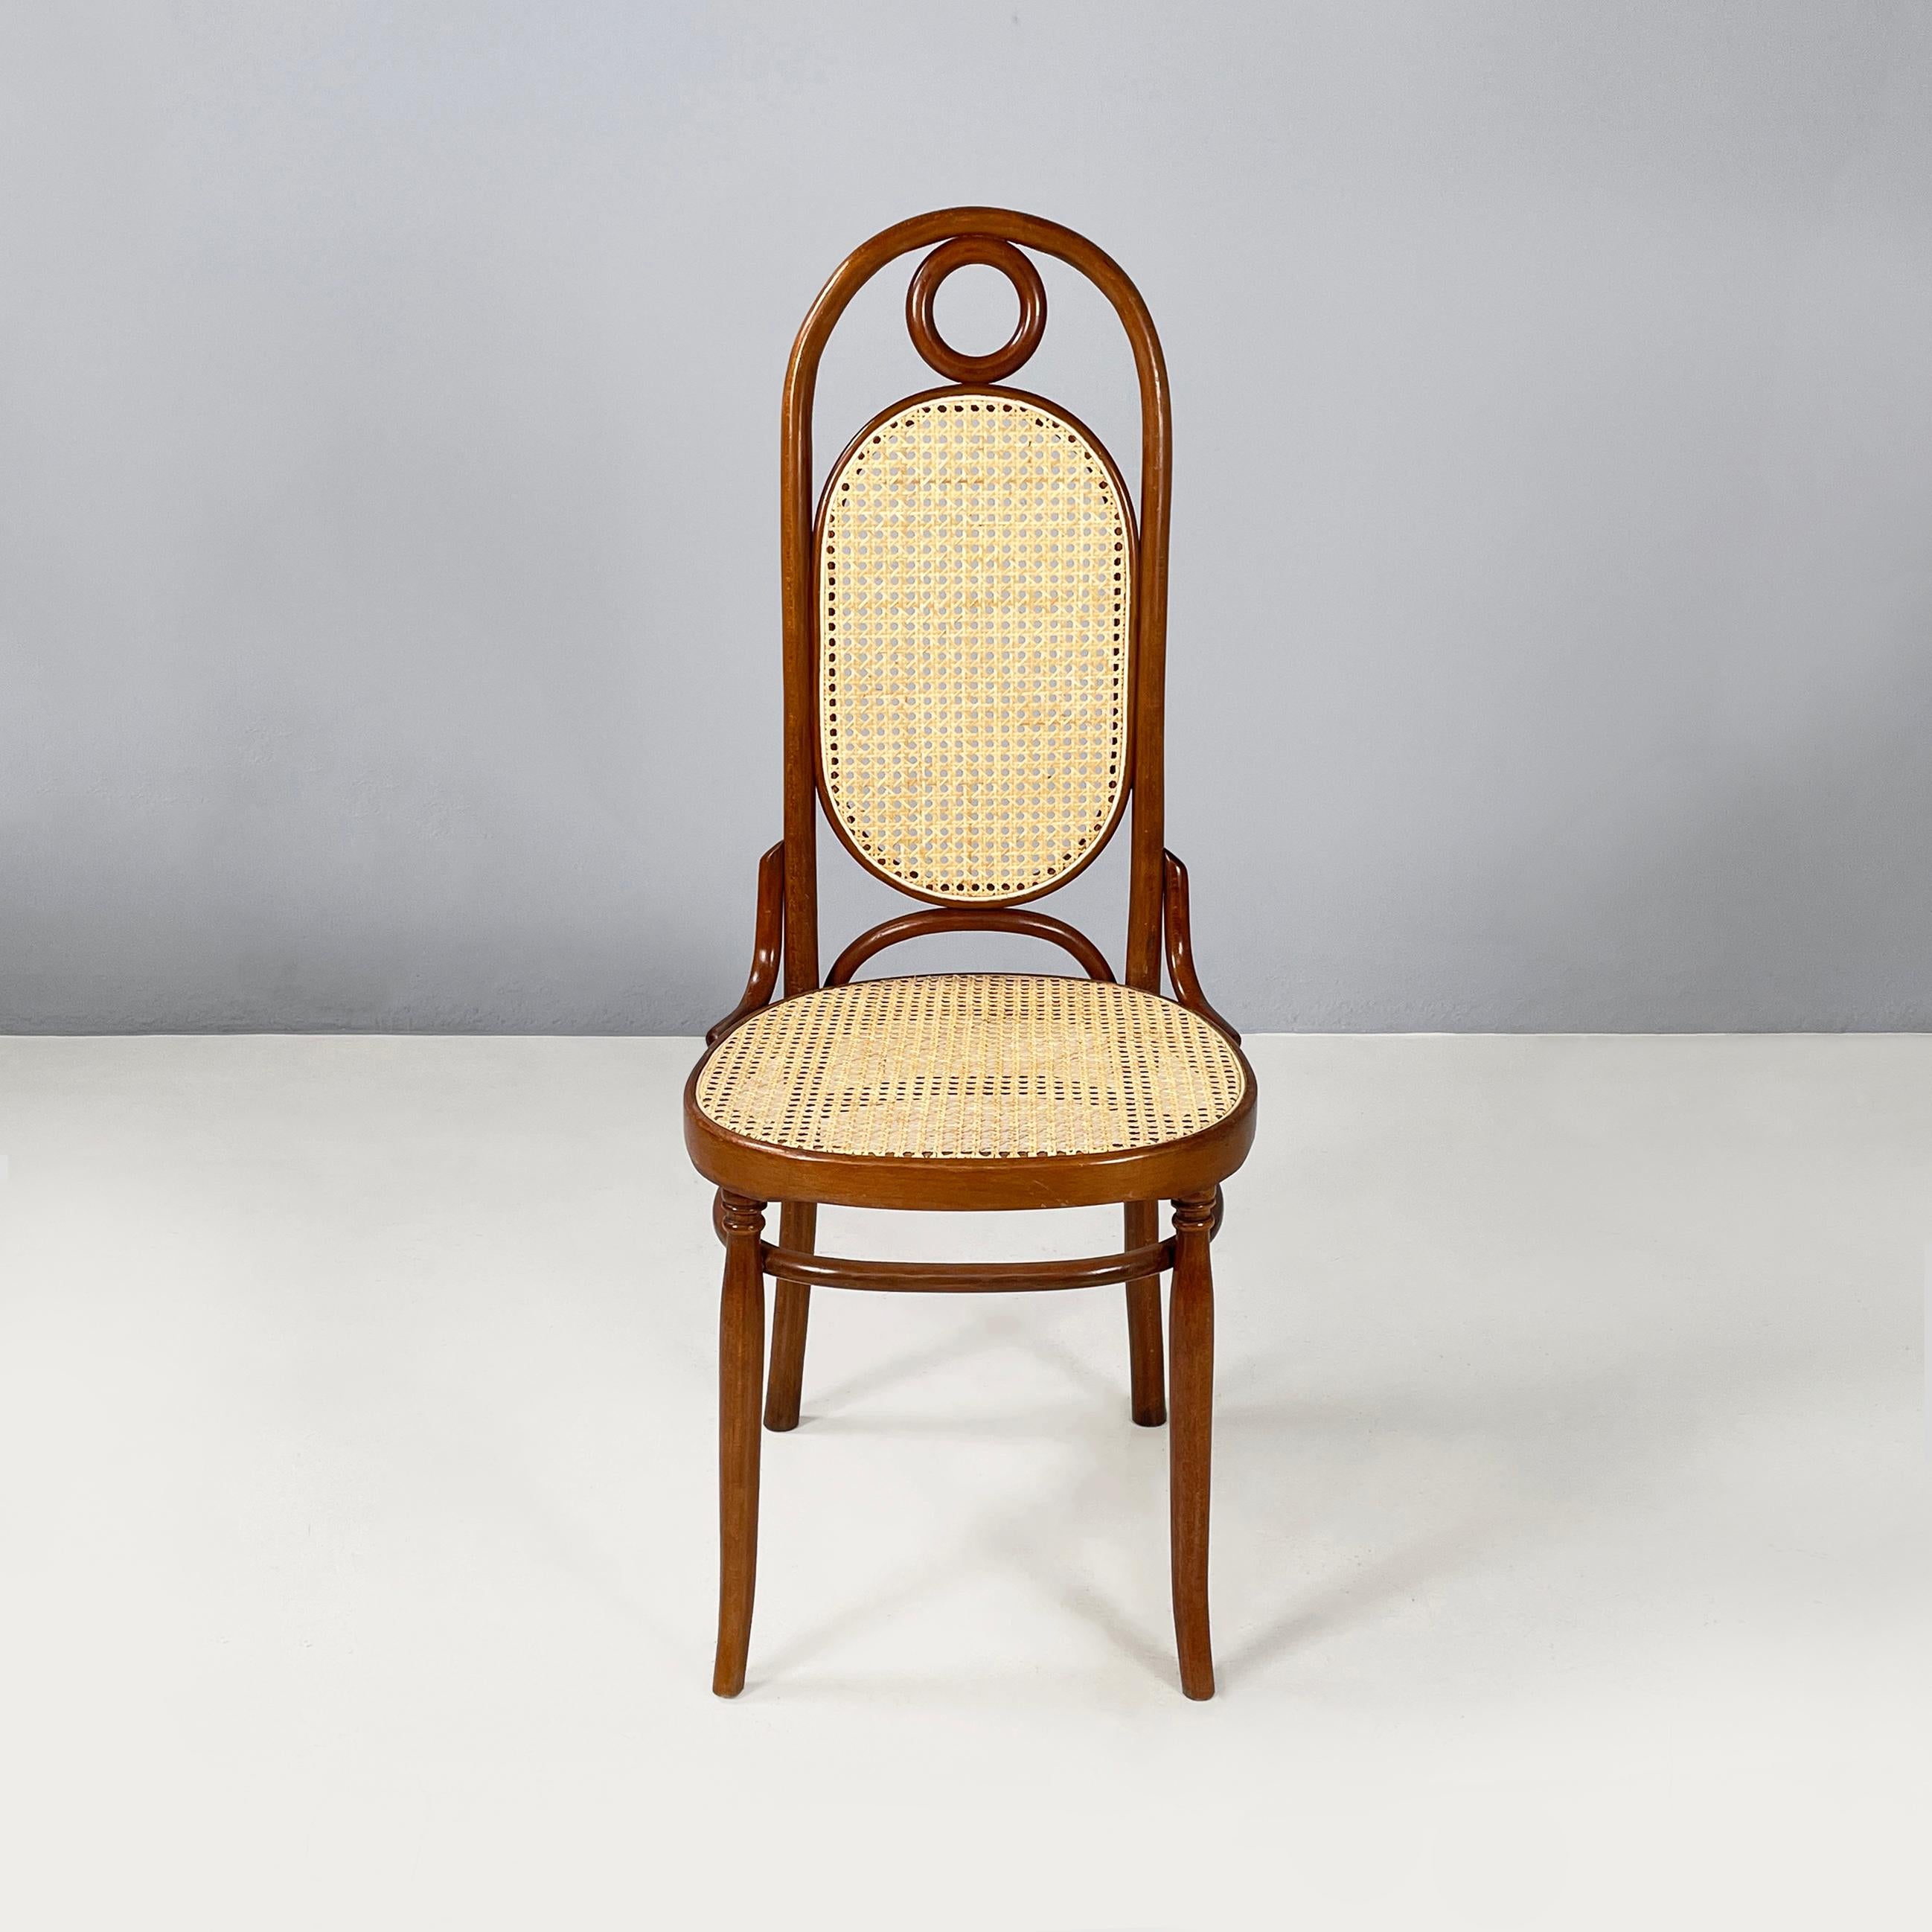 Chaise italienne en paille et Wood Wood, 1900-1950s
Chaise avec assise carrée aux angles arrondis en paille avec profils en bois. Le dossier en paille semi-ovale est doté d'un cercle décoratif au sommet et d'une structure en bois. Pieds en bois à